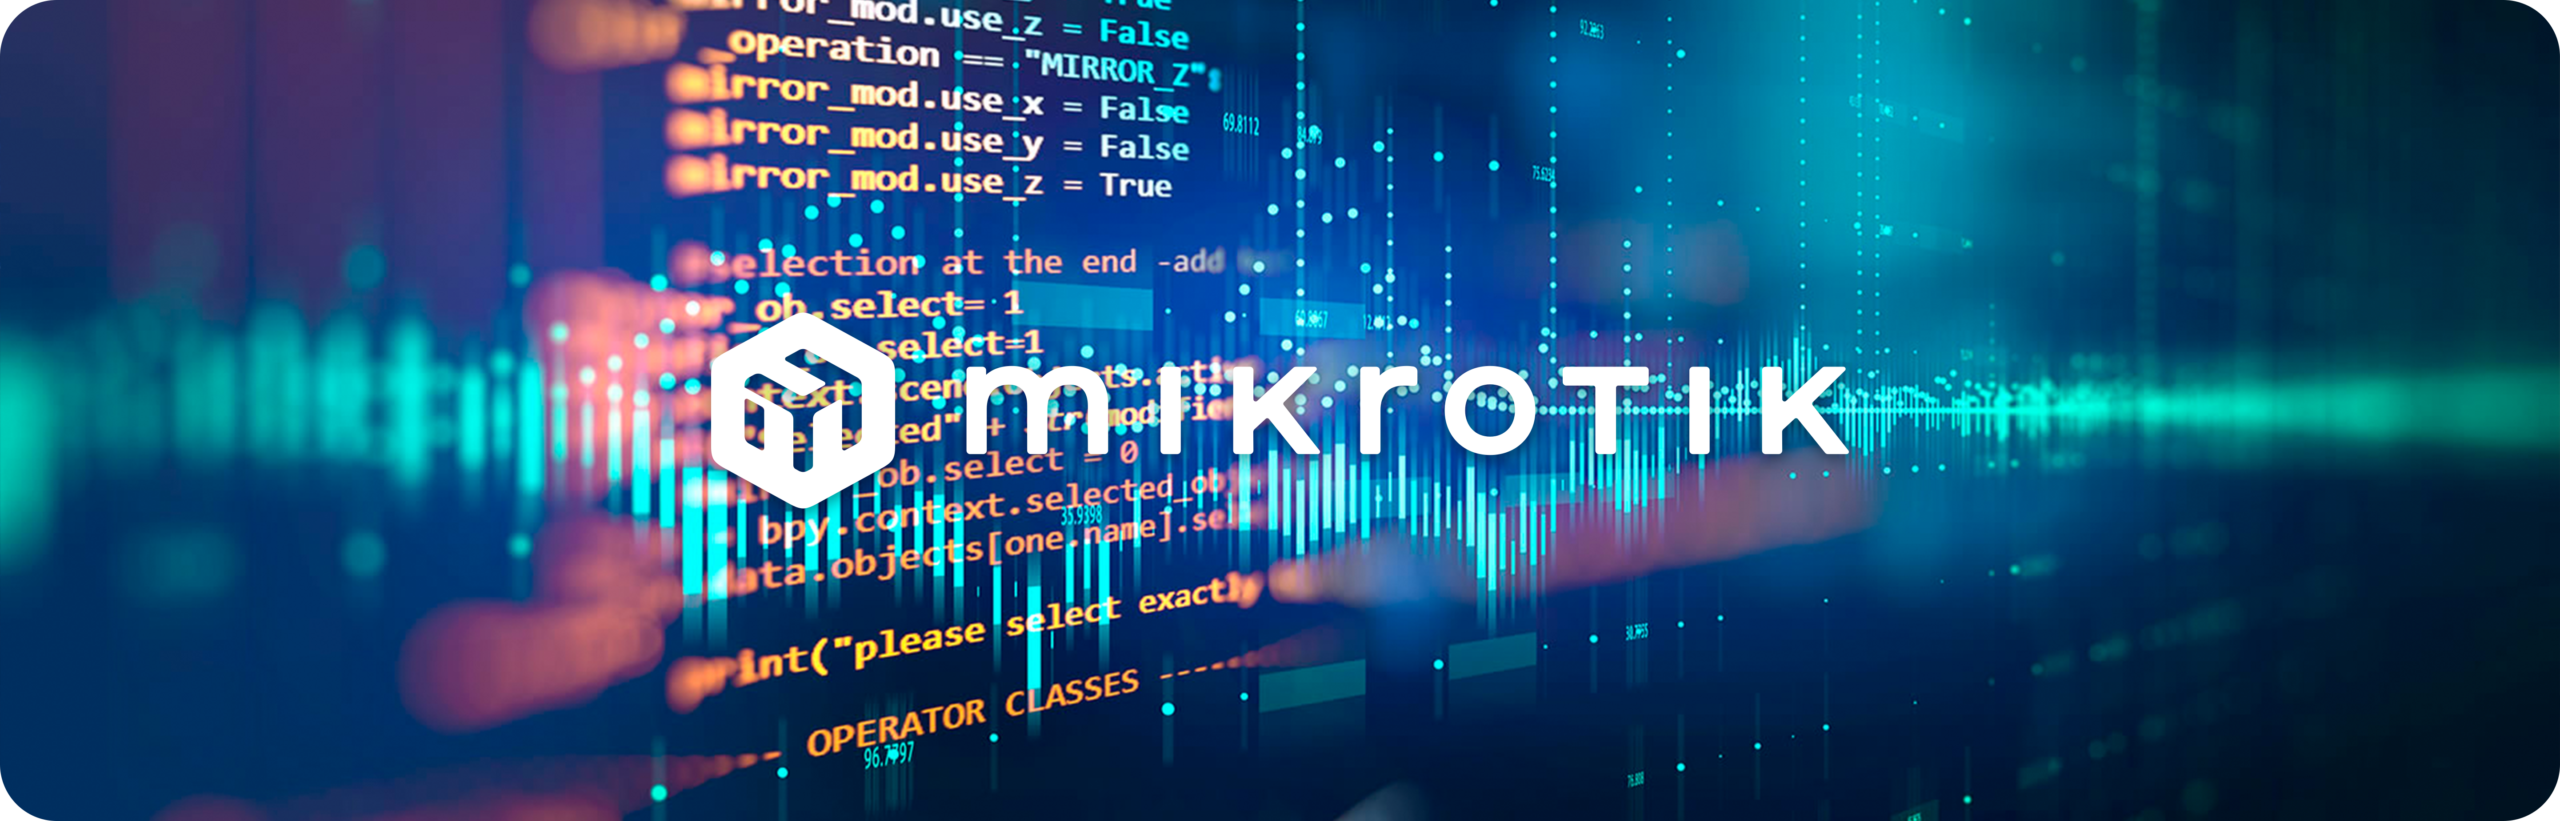 Fundo de dados e programação com logotipo da MikroTik em destaque